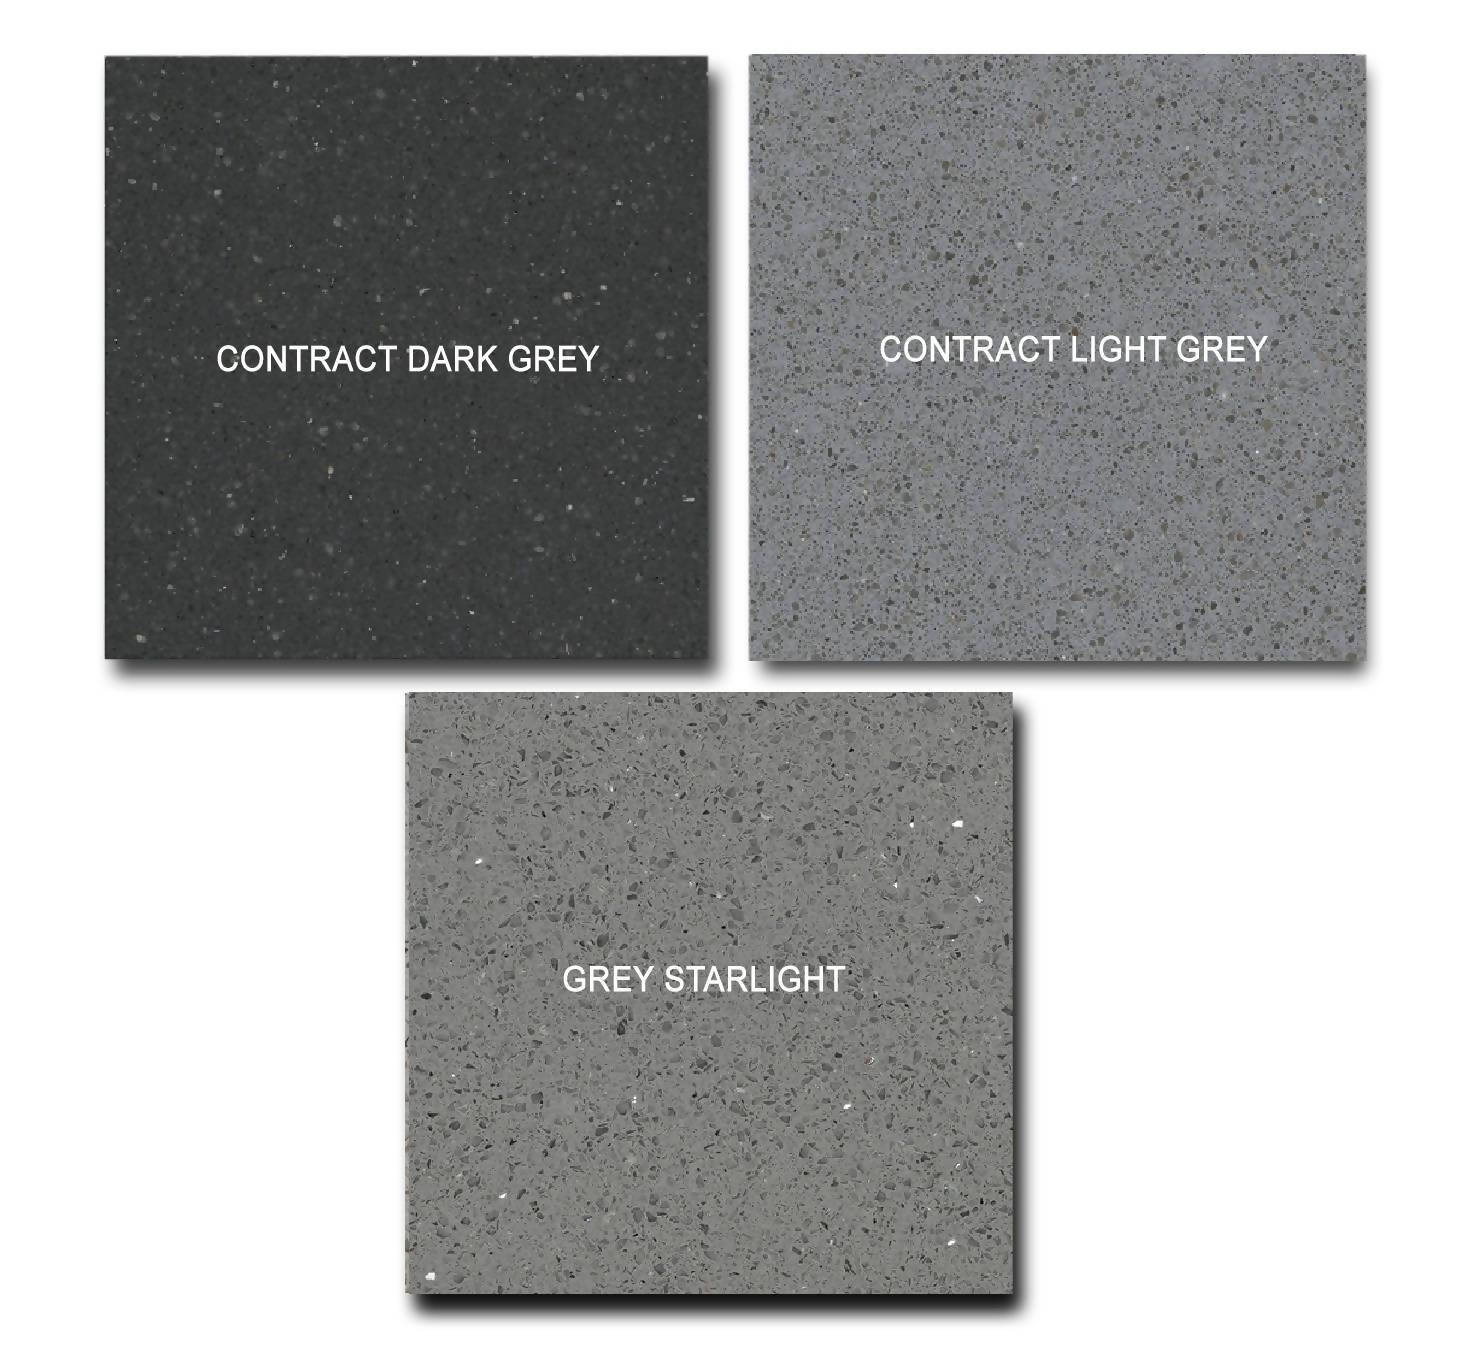 LIGHT GREY CONTRACT QUARTZ,Quartz,Blyth Marble Ltd,www.work-tops.com